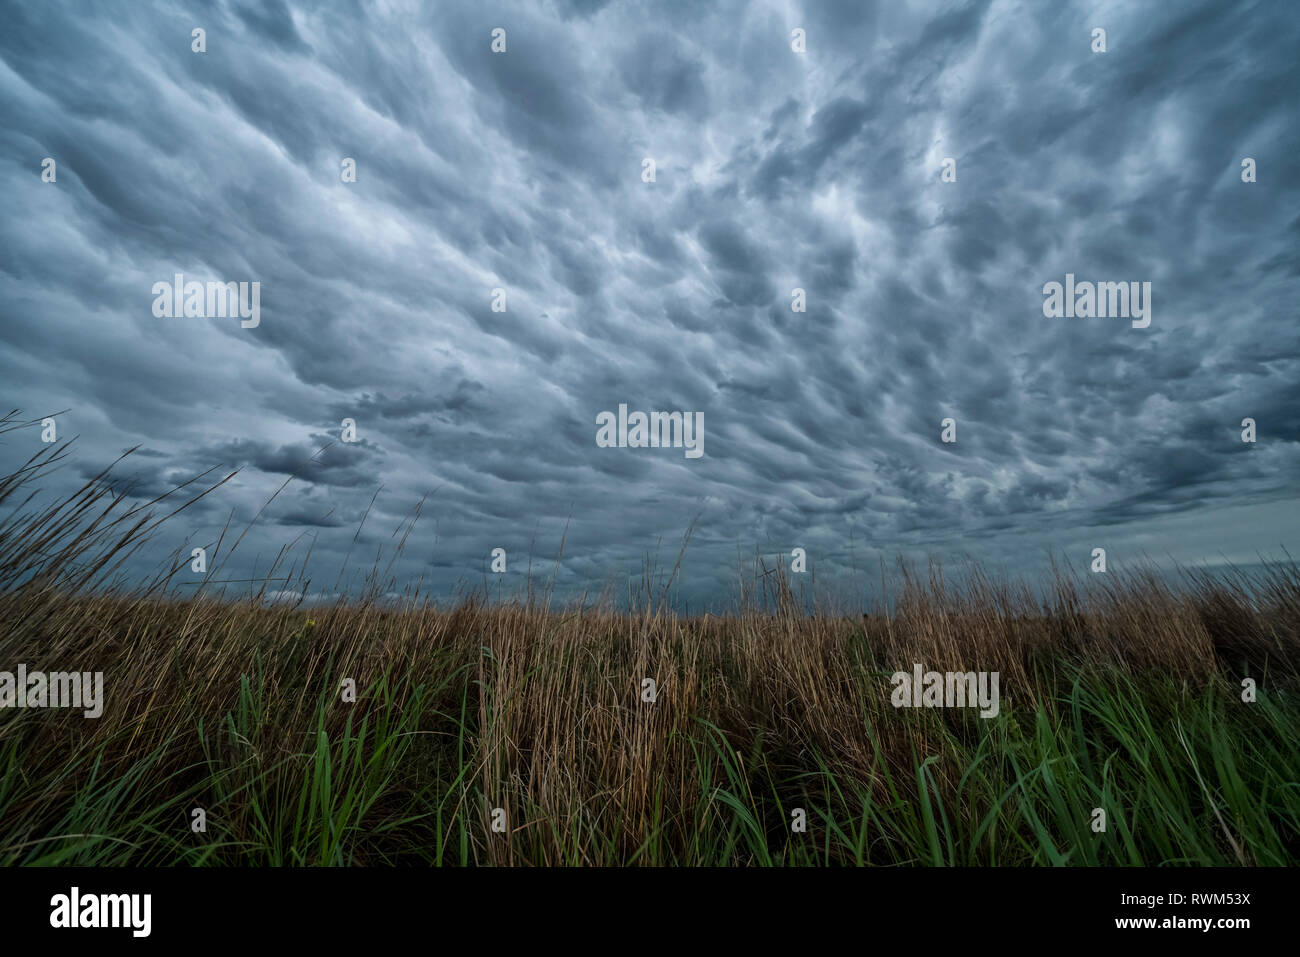 Dramatische Himmel über der Landschaft während eines Sturms jagen Tour im mittleren Westen der Vereinigten Staaten gesehen, Kansas, Vereinigte Staaten von Amerika Stockfoto